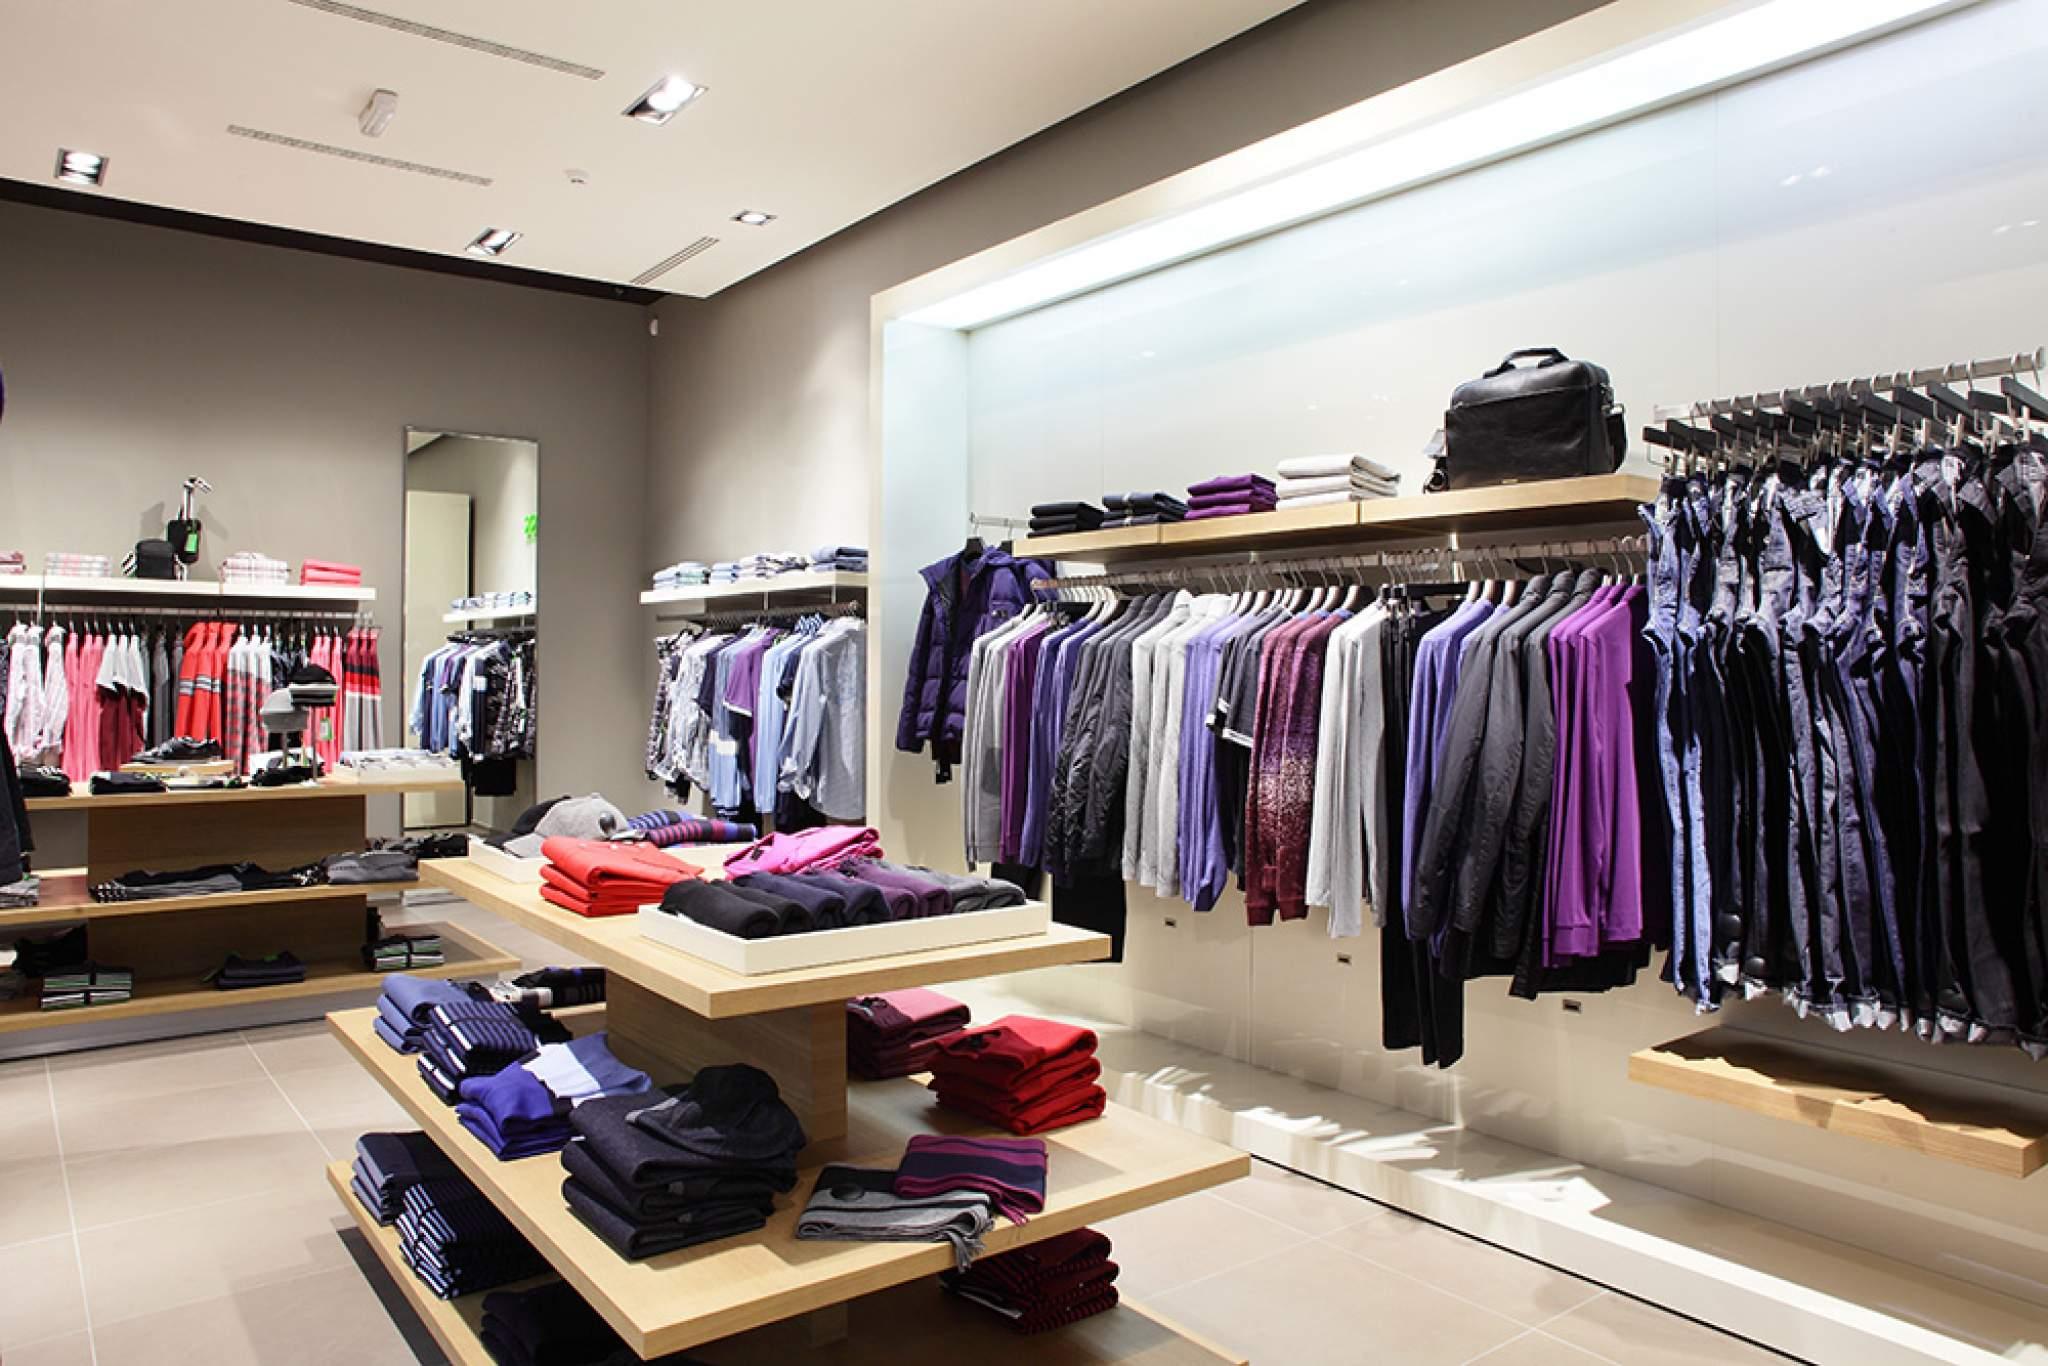 Как оформить магазин одежды? Советы и примеры дизайна - Одежда оптом в РБ